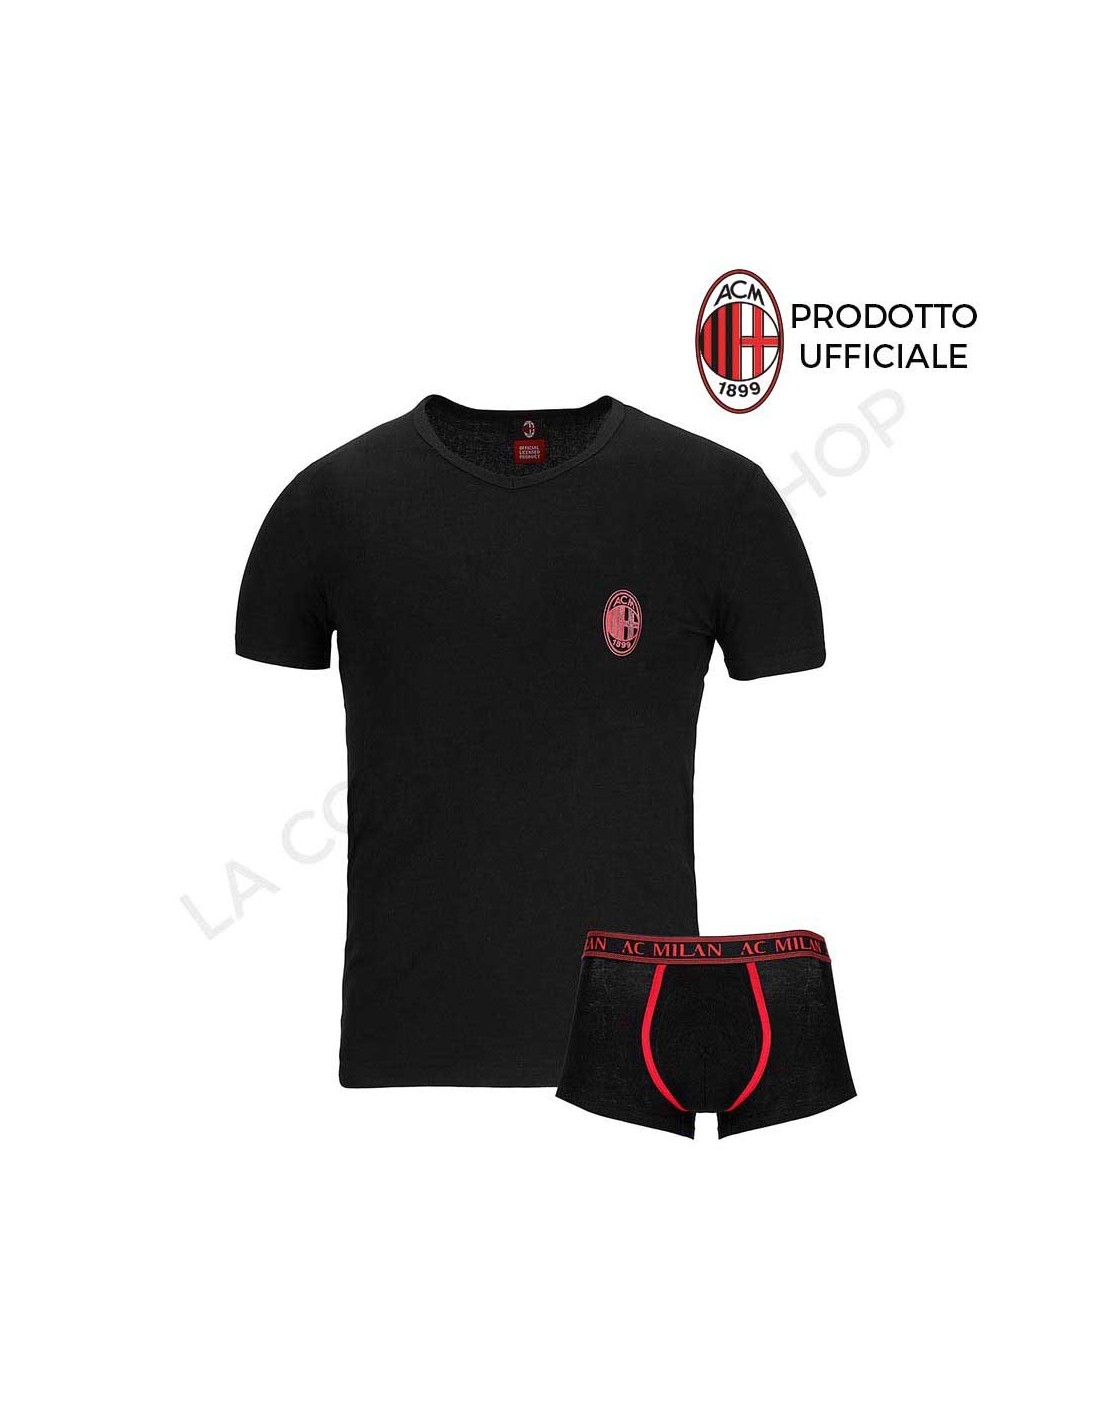 Completo intimo uomo maglia e boxer A.C. Milan underwear ufficiale cotone  nero MI11055